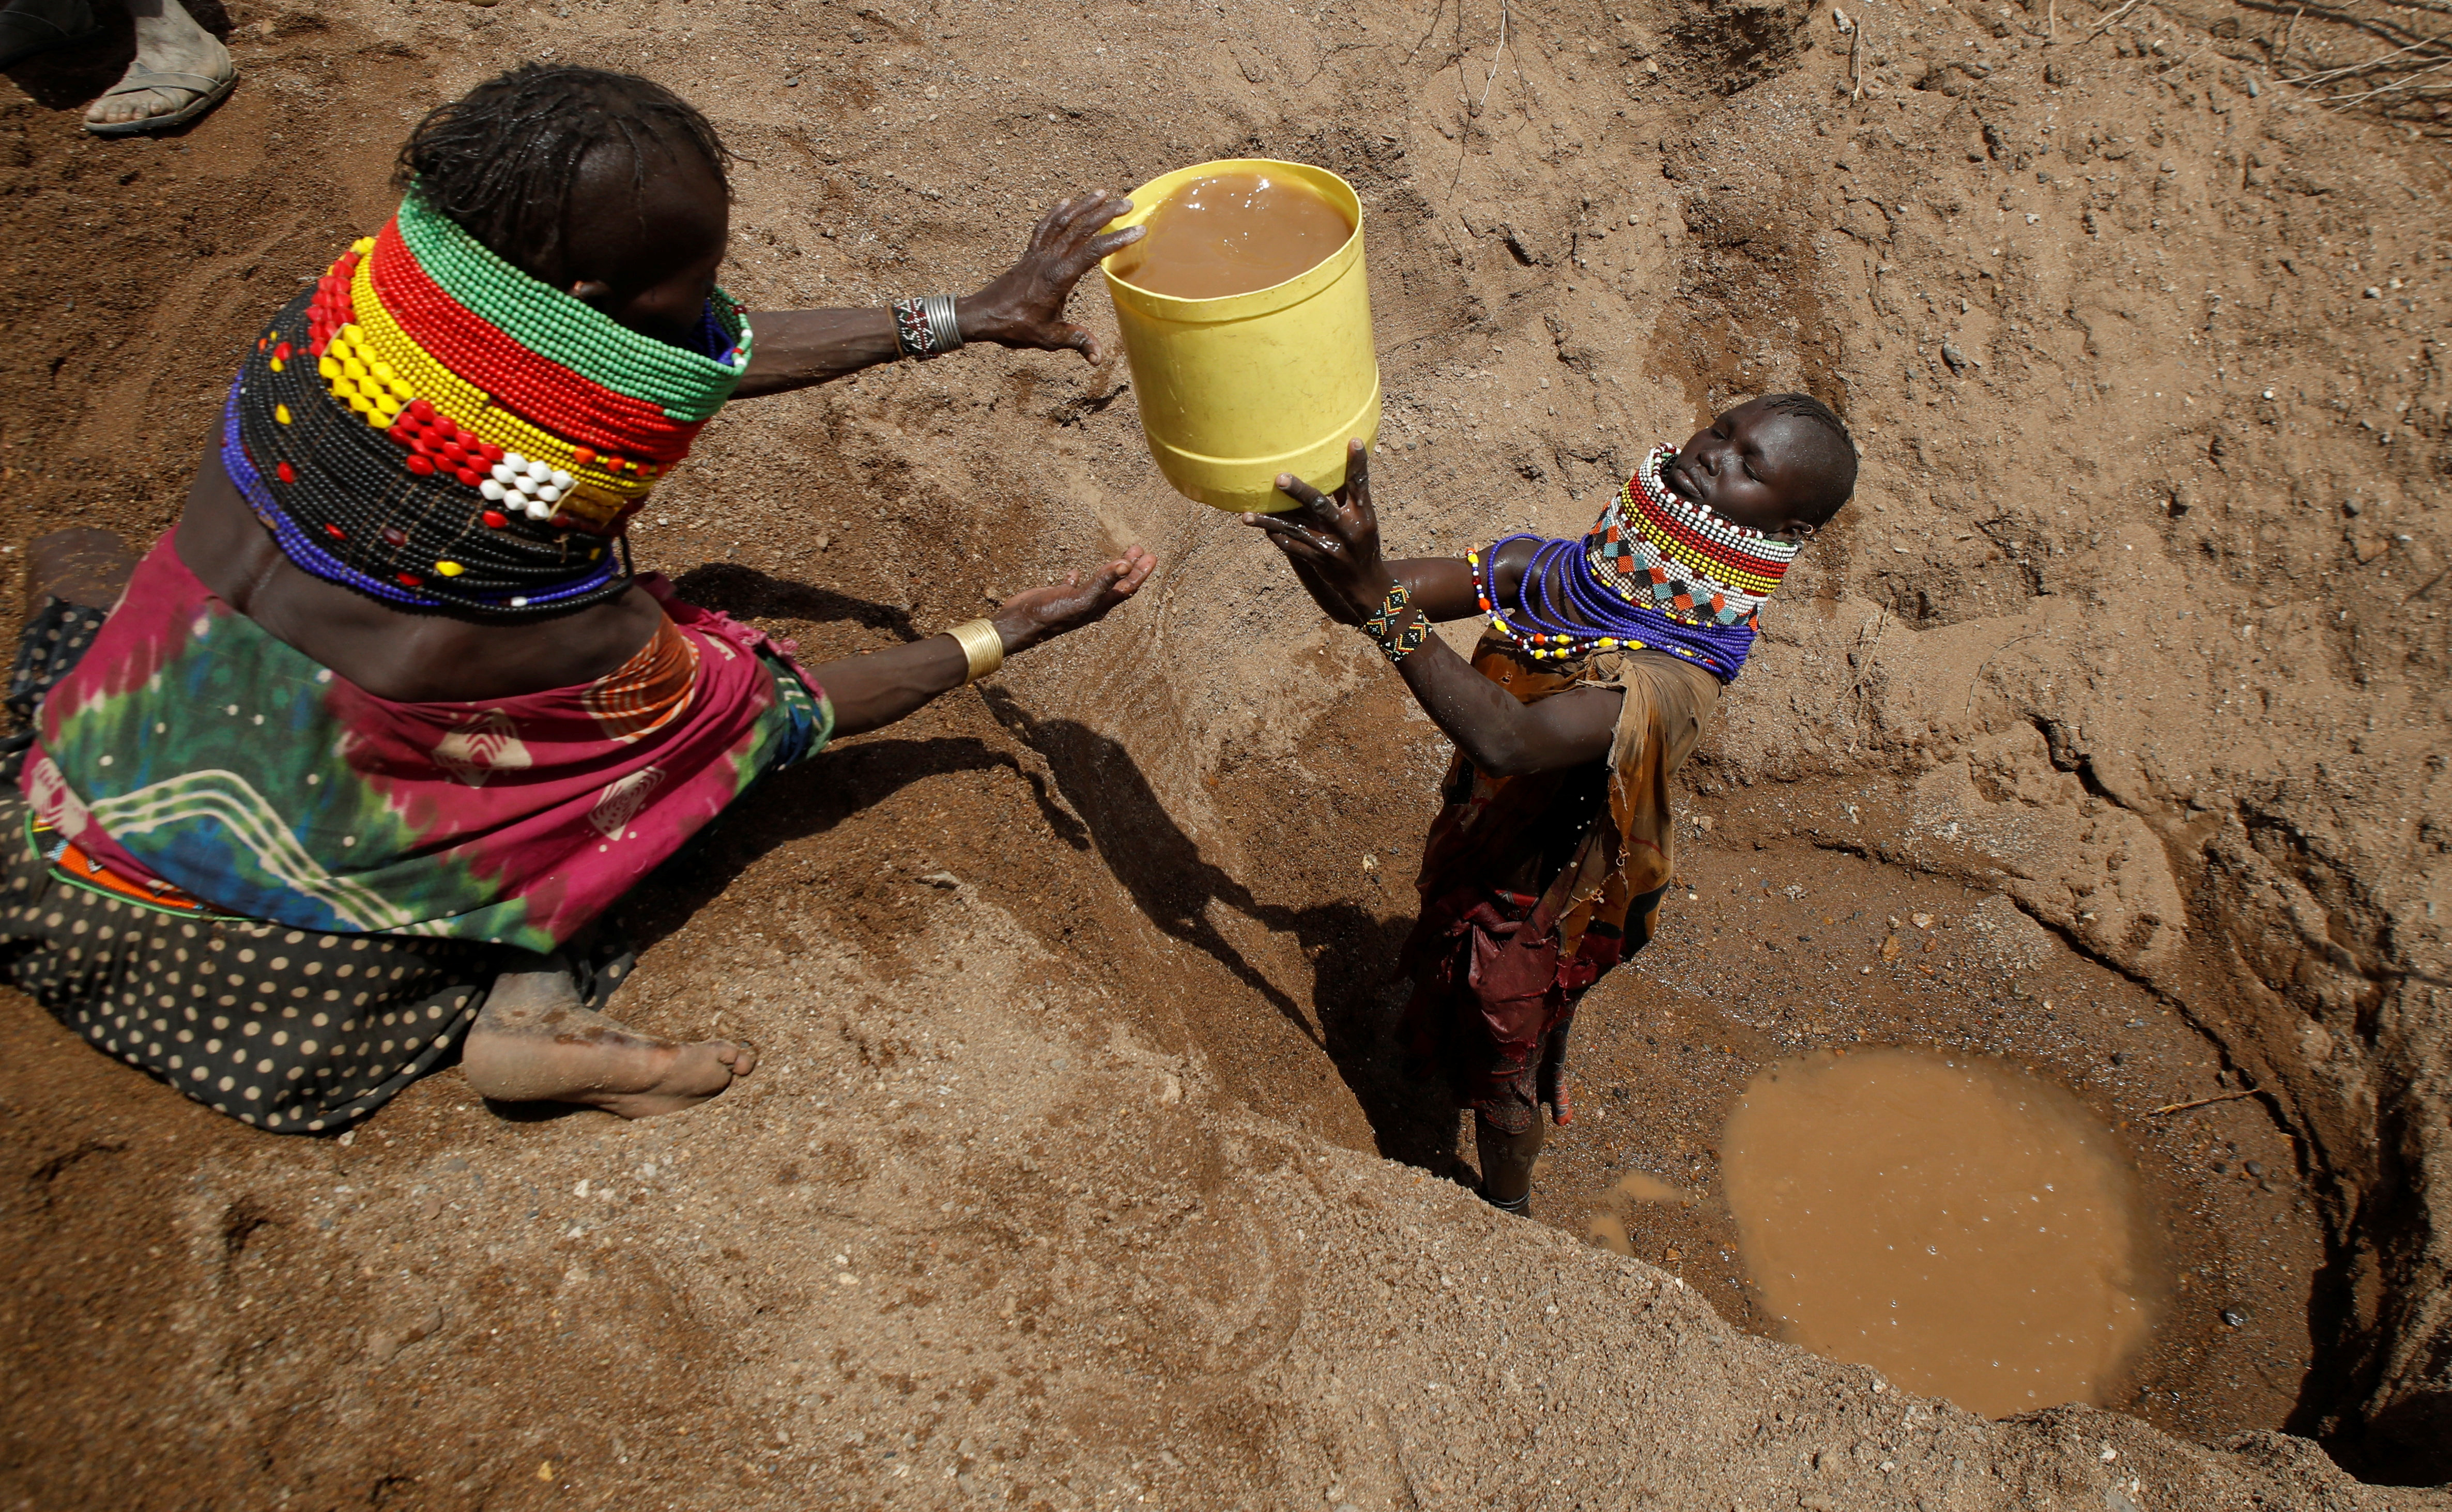 Drought in Kenya